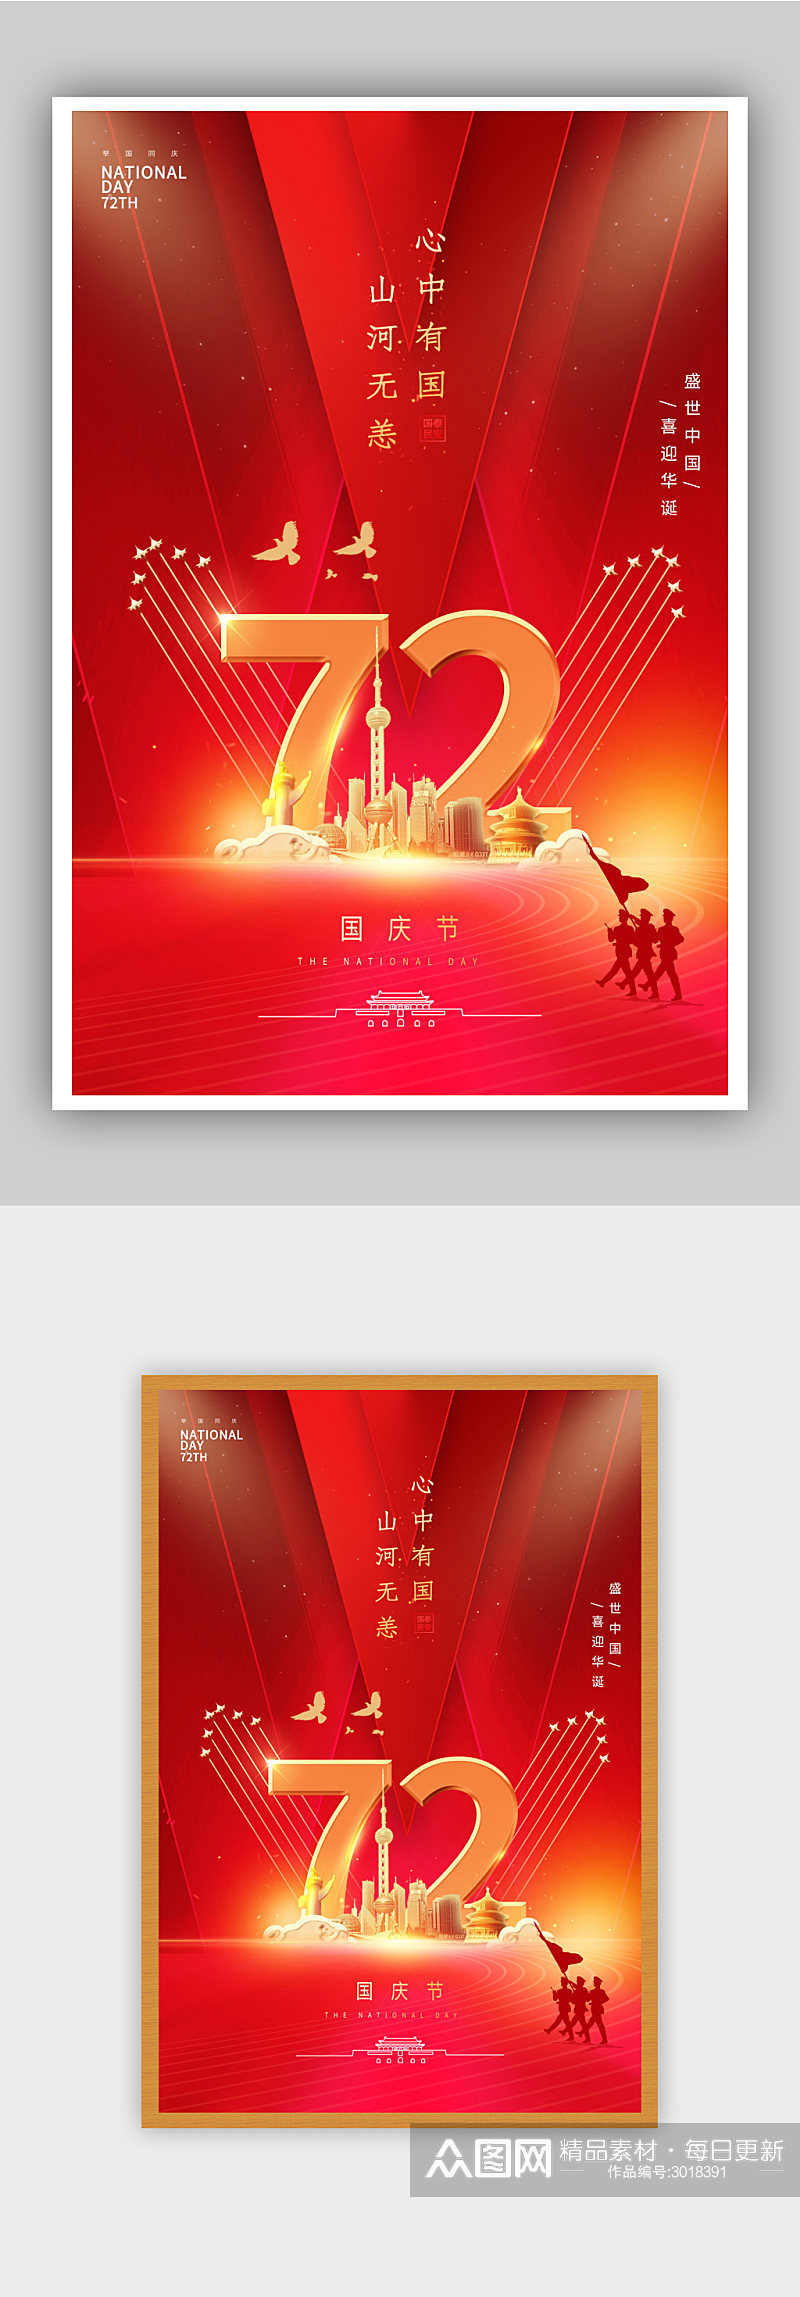 红色国庆节节日海报素材